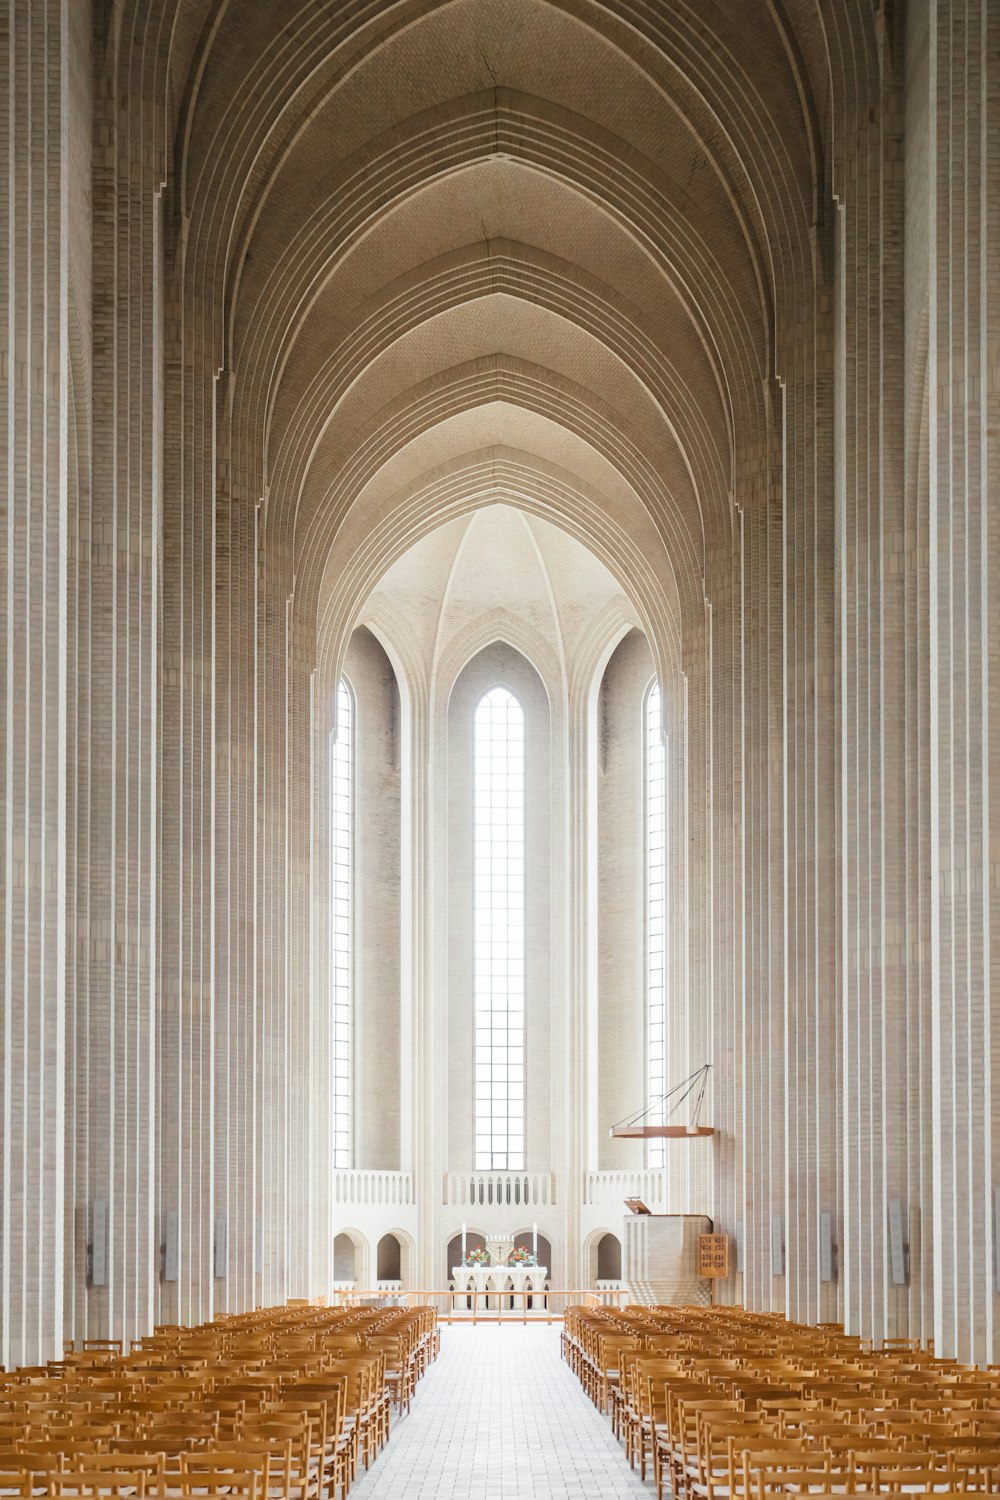 Intérieur vide de la cathédrale